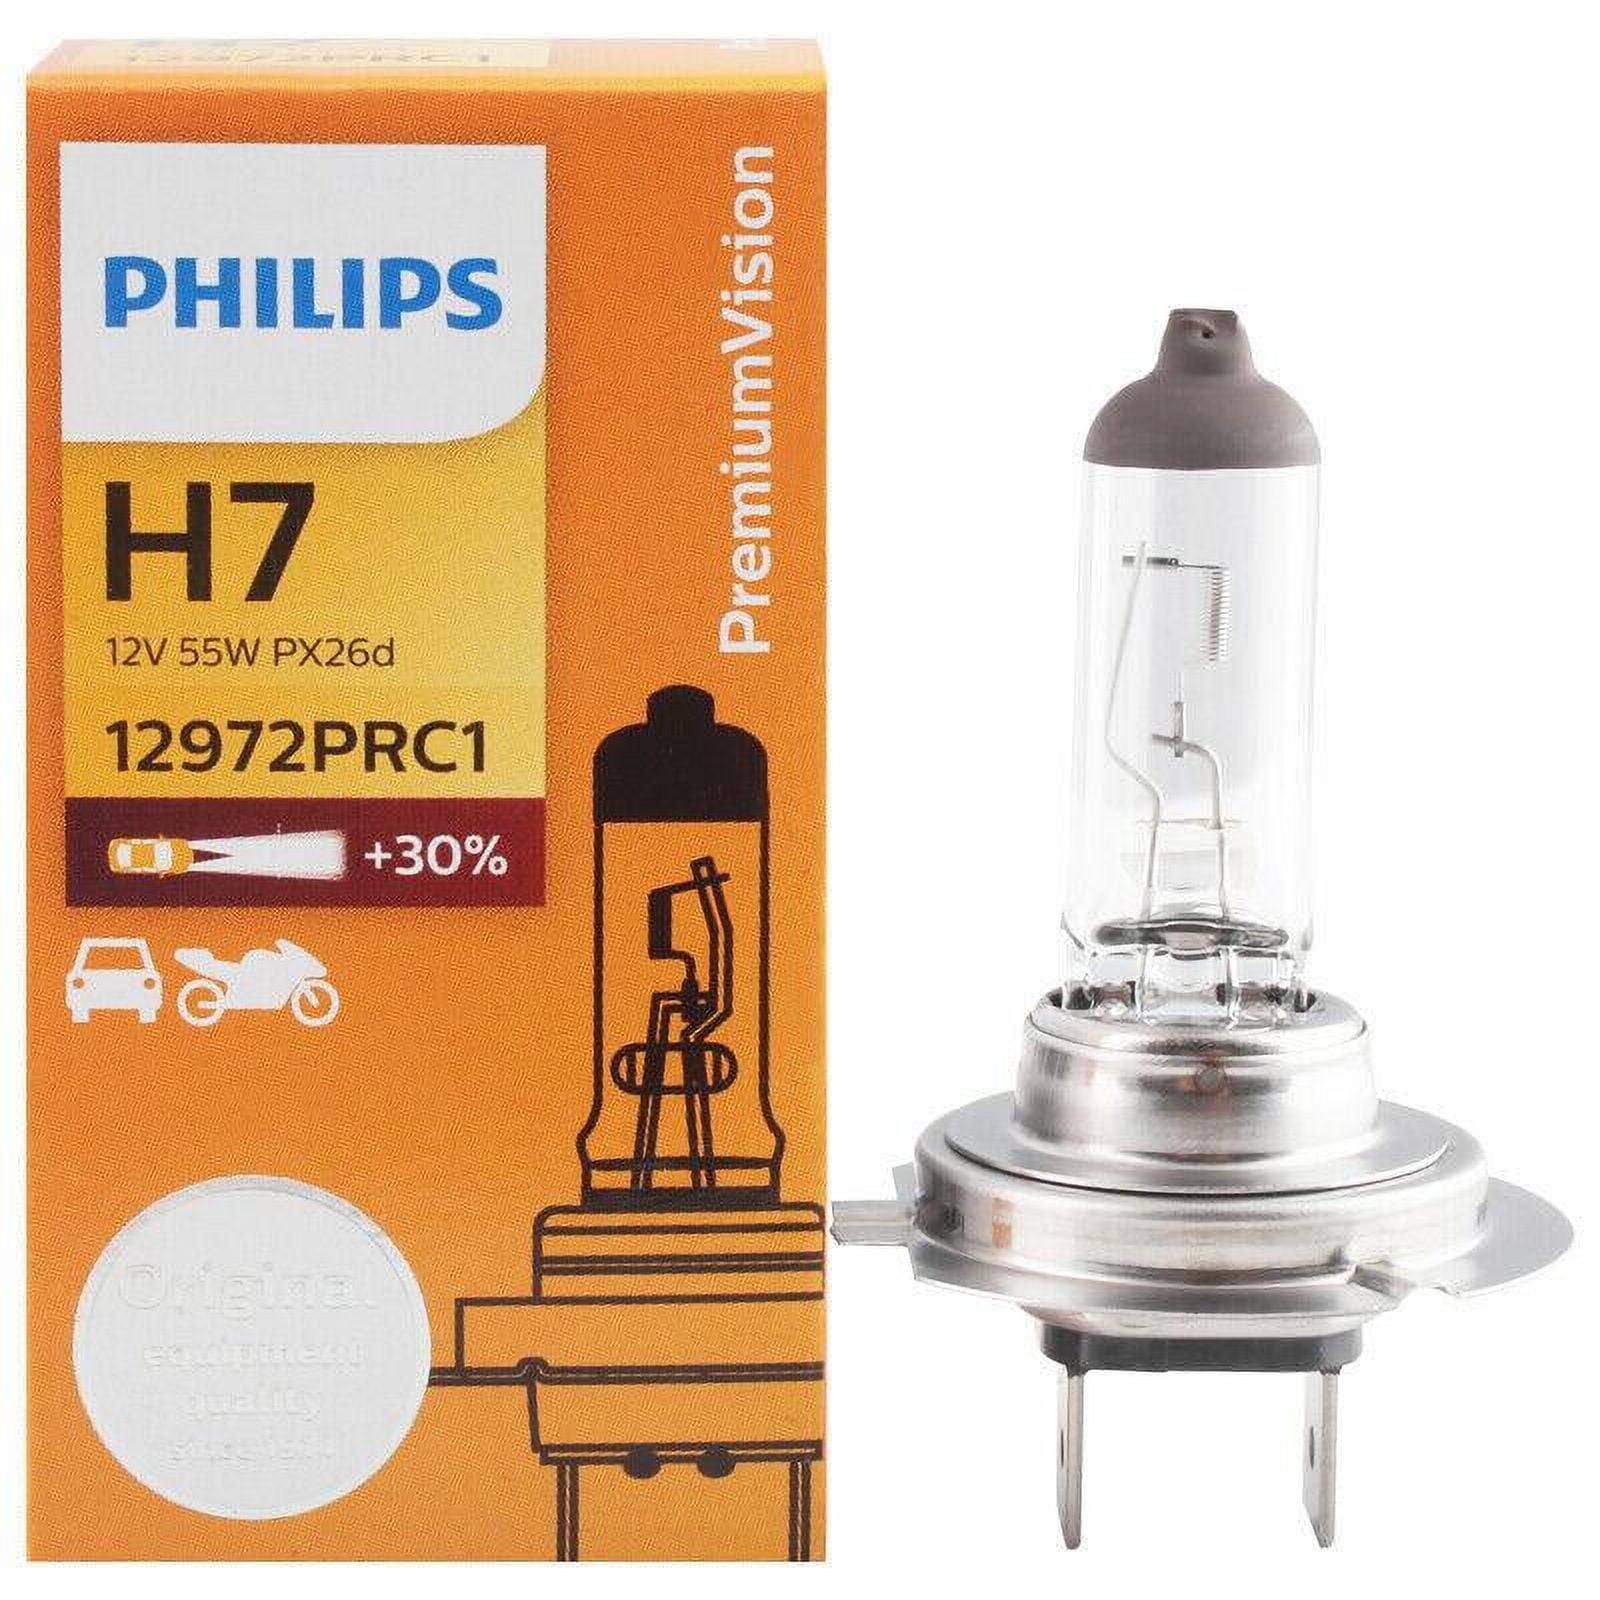 H7 Philips Premium Vision +30% 12V 55W